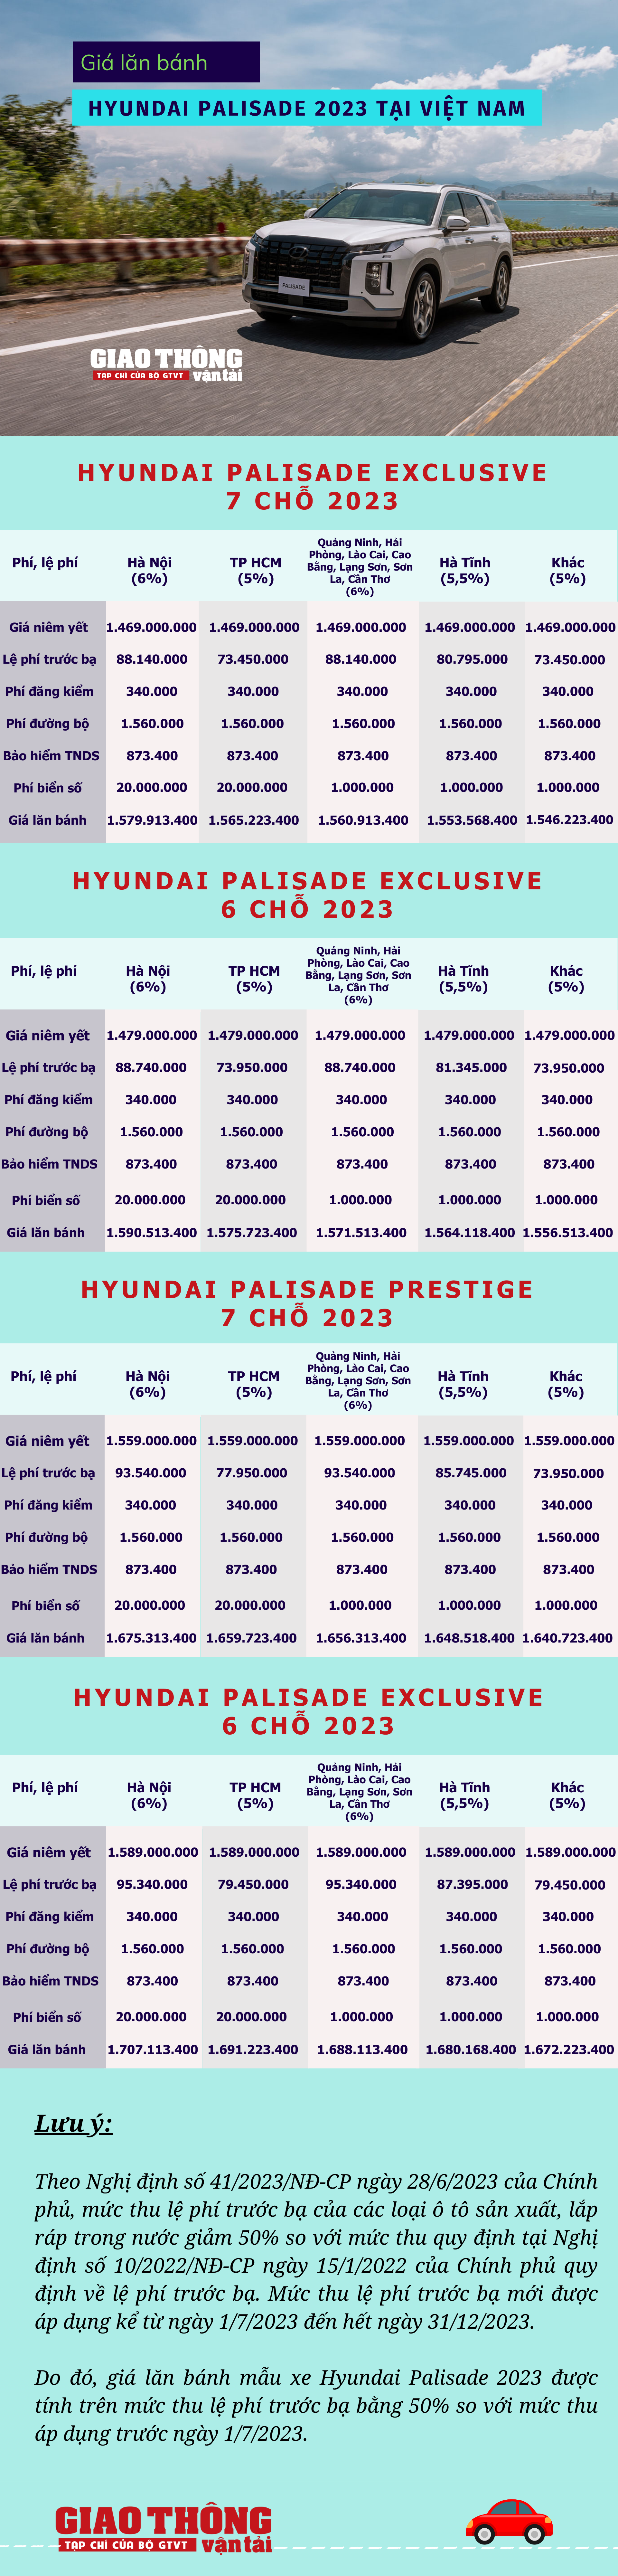 Giá lăn bánh Hyundai Palisade 2023: Rẻ hơn đối thủ trên 1 tỷ đồng - Ảnh 1.